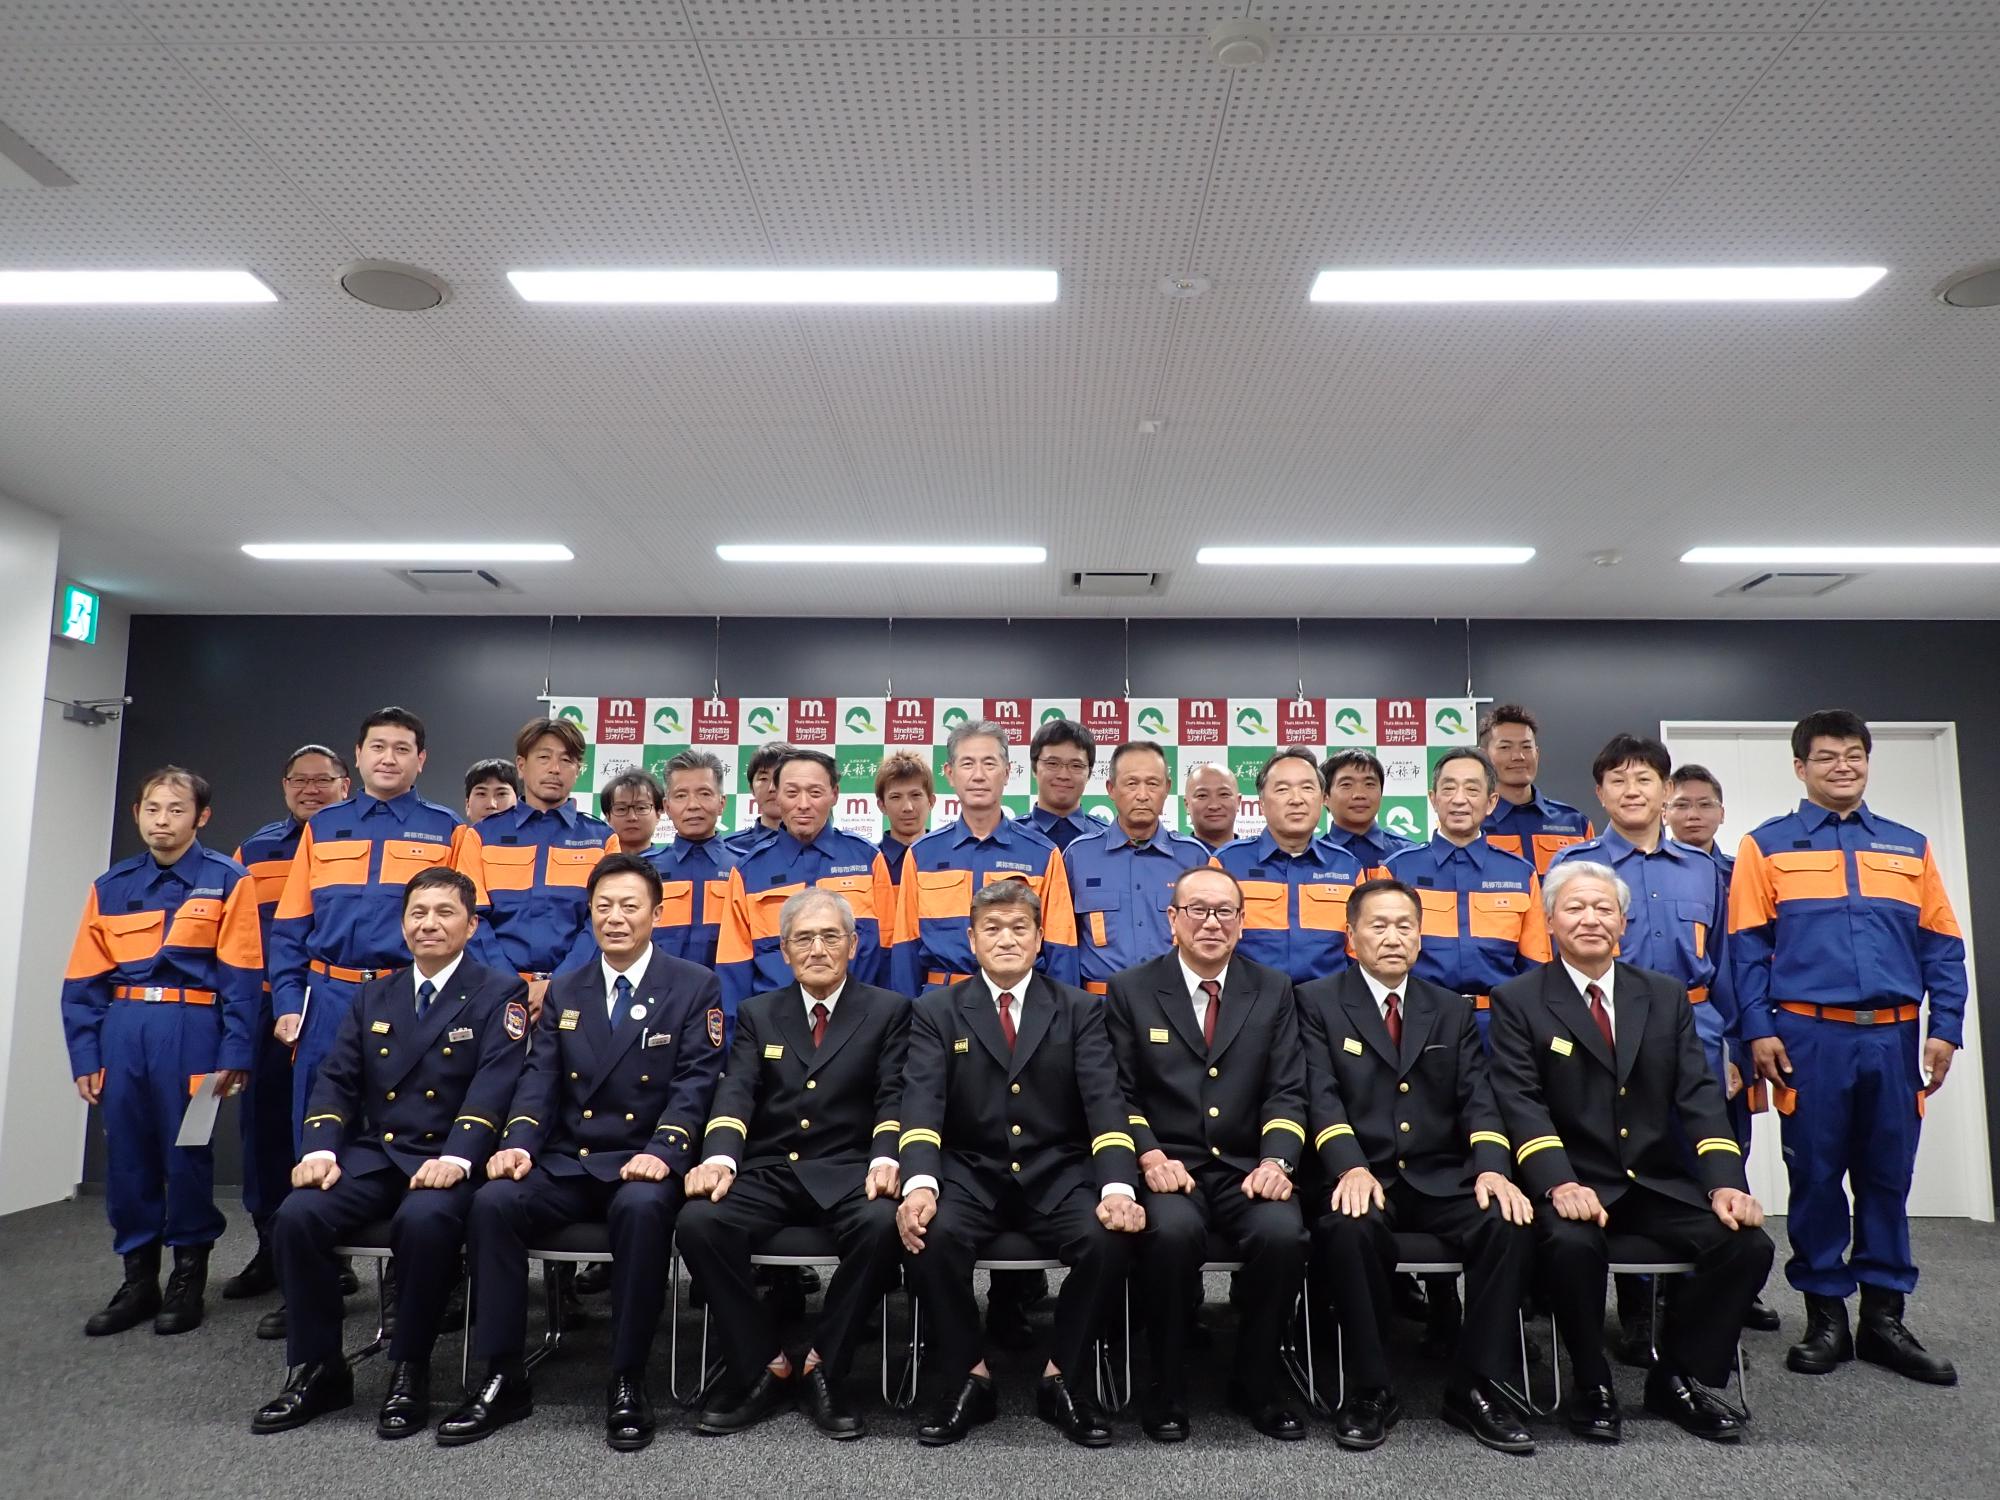 消防団長を中心に並ぶ幹部団員と新任団員の集合写真